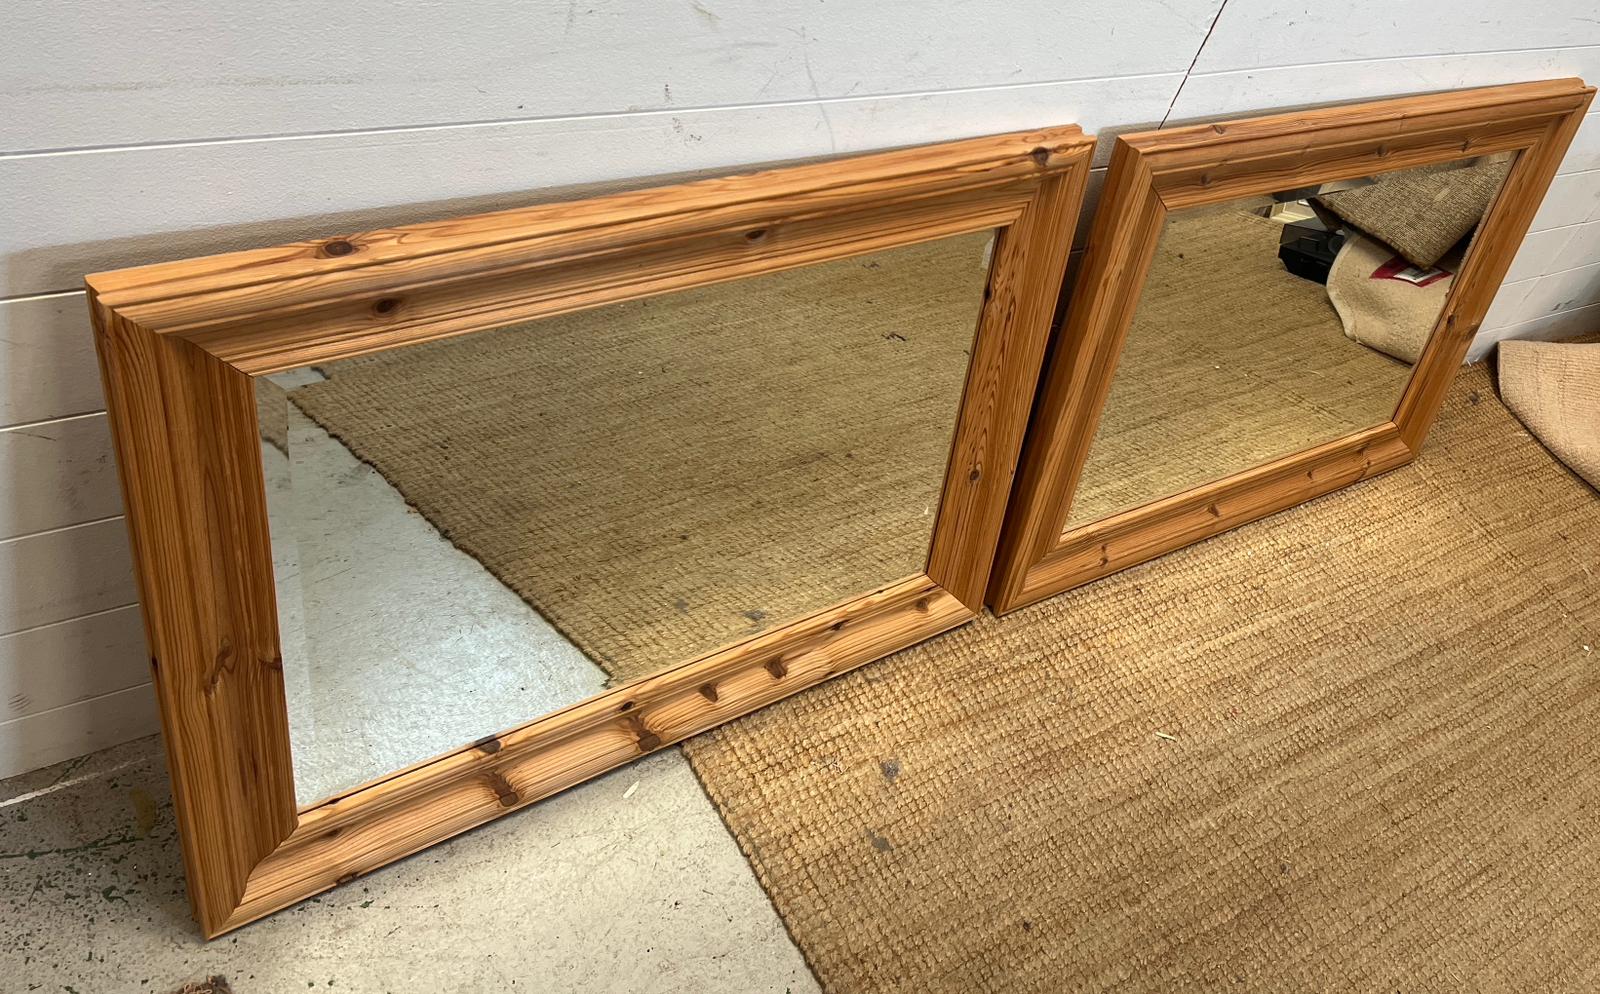 A pair of pine mirrors 94cm x 67cm